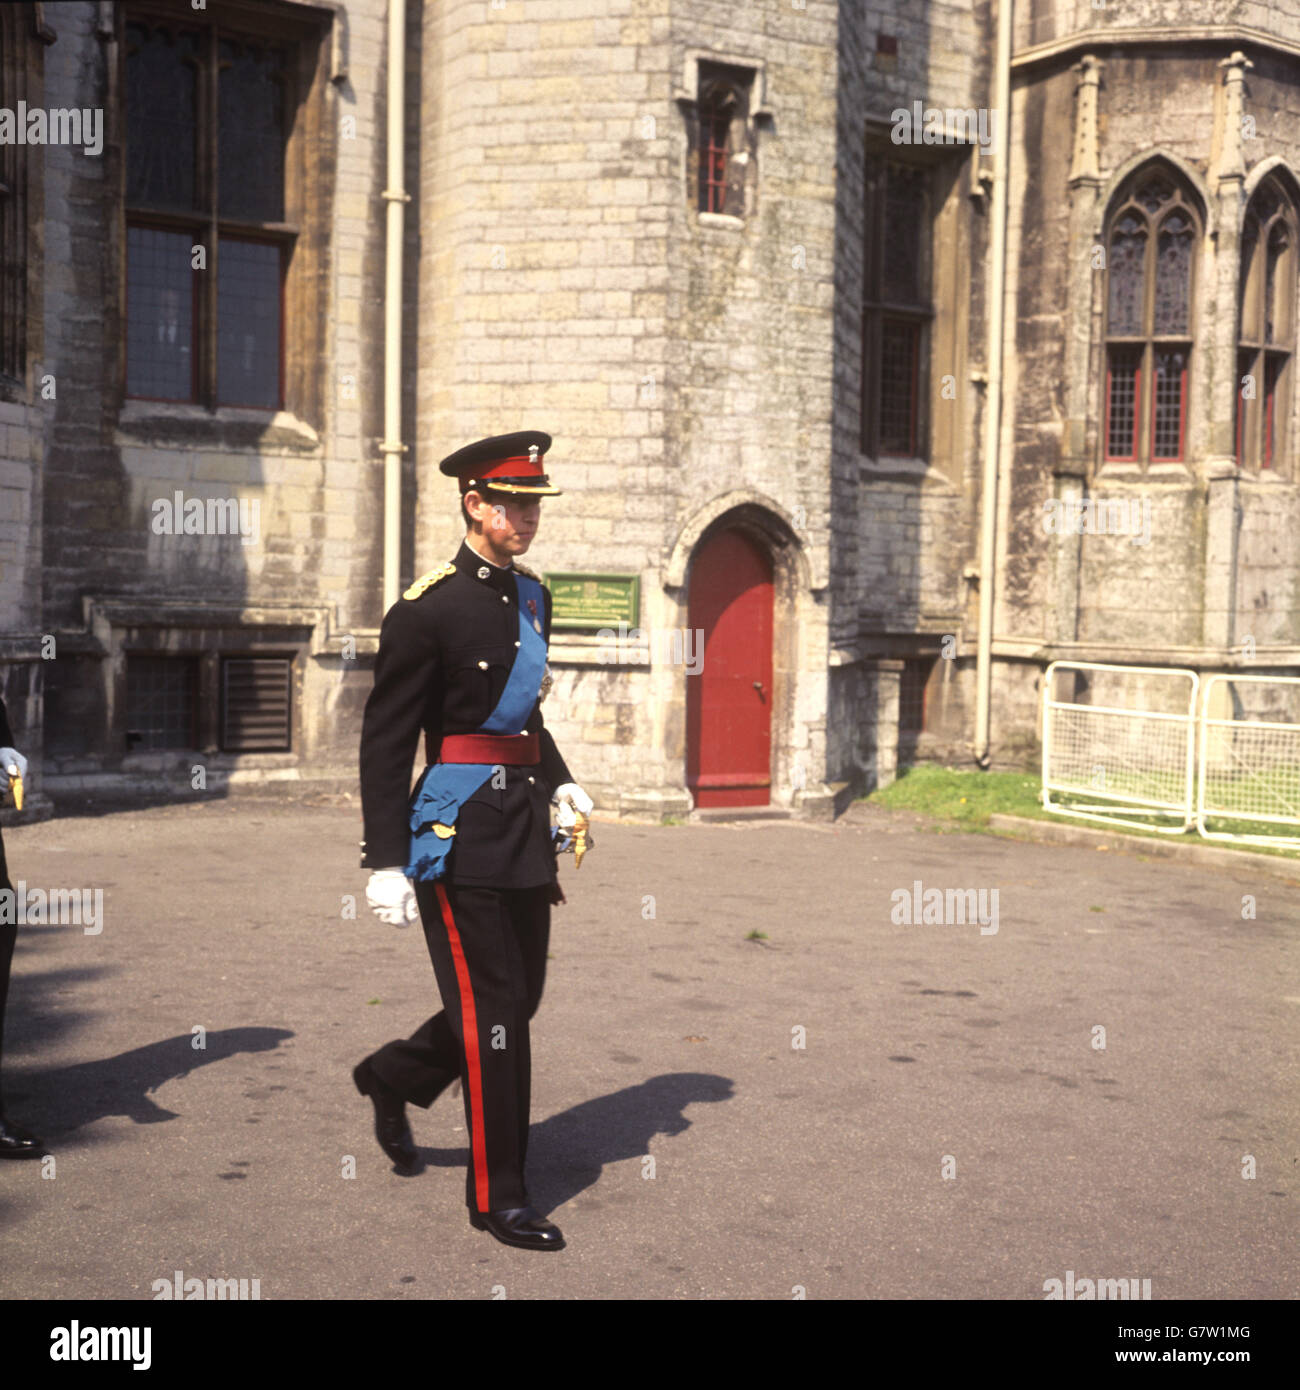 EL PRÍNCIPE CARLOS, en blues formal como comandante en jefe del Regimiento Real de gales, llegando al Castillo de Cardiff para la Inauguración del Regimiento. Él llevará el mismo uniforme, bajo el ermino de su rango, en su investidura como Príncipe de Gales. Foto de stock